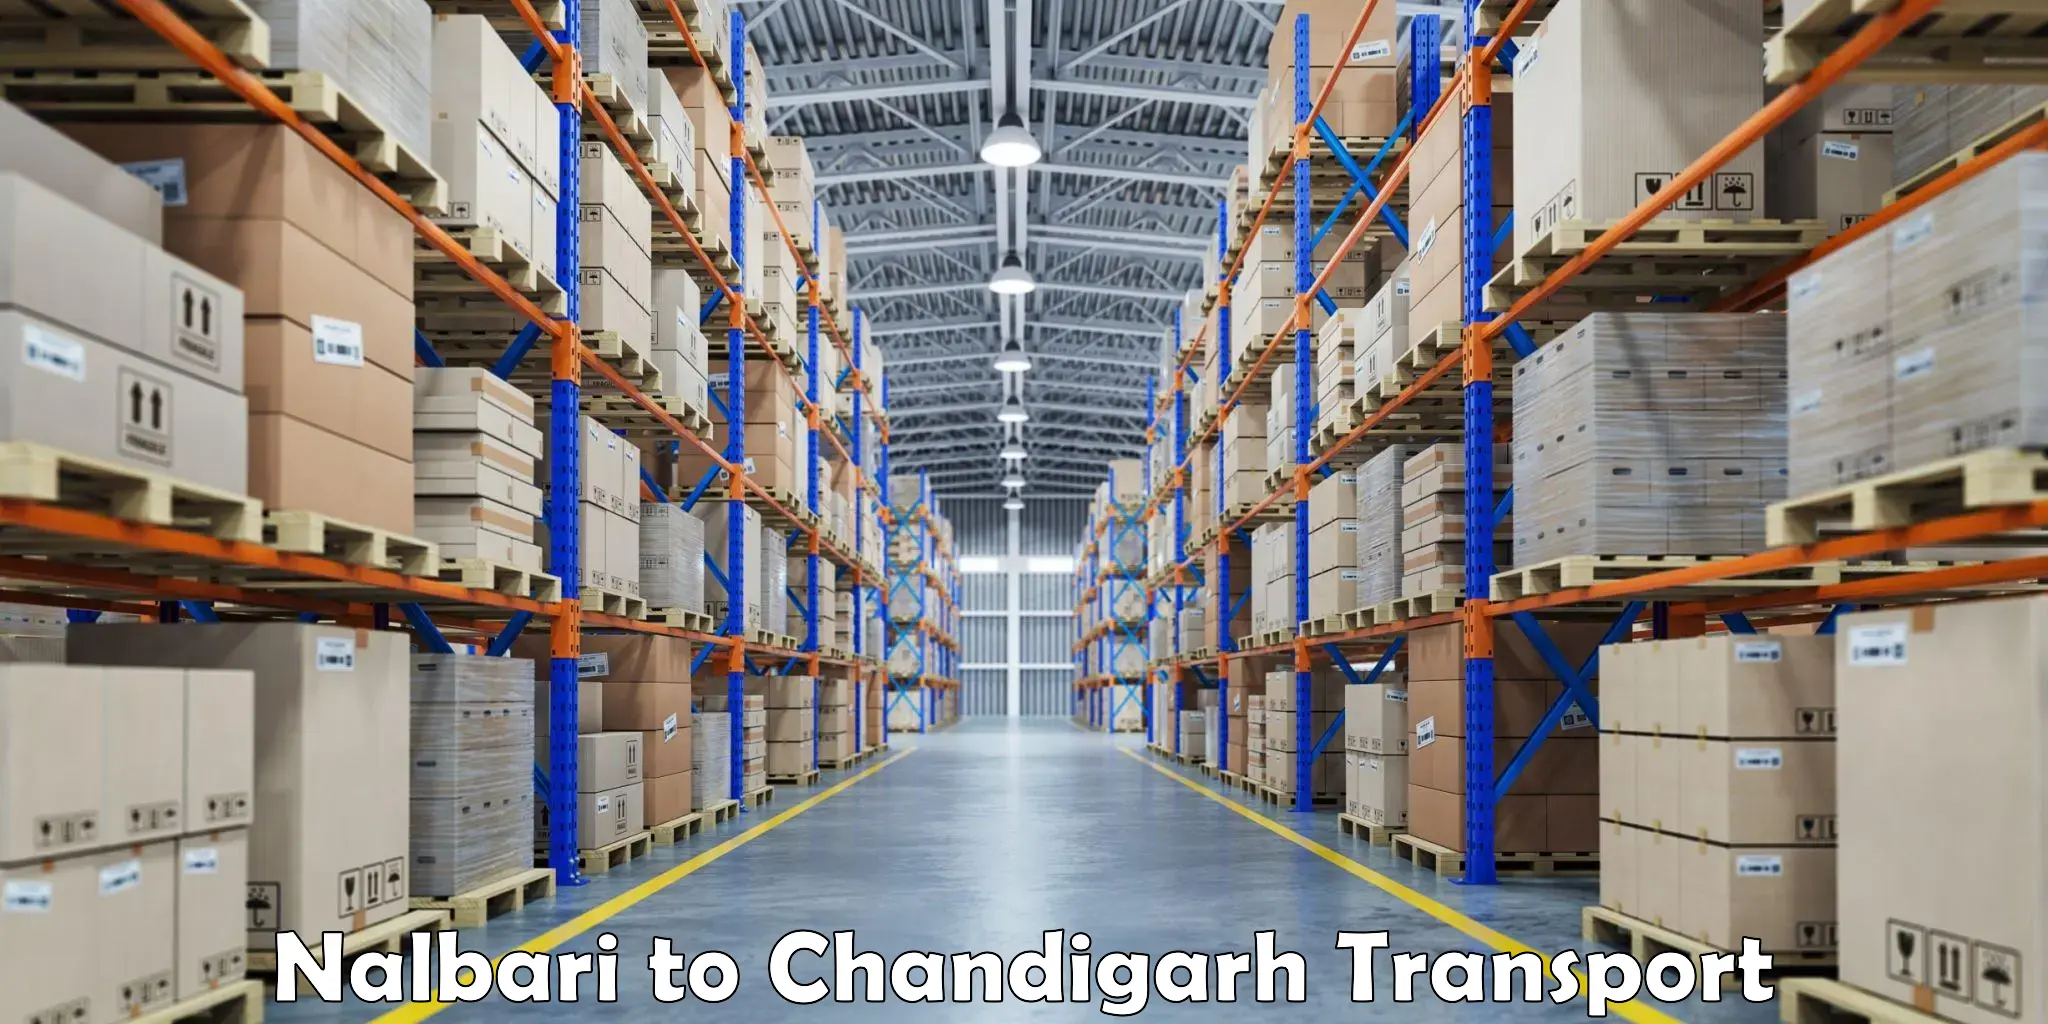 Pick up transport service Nalbari to Chandigarh